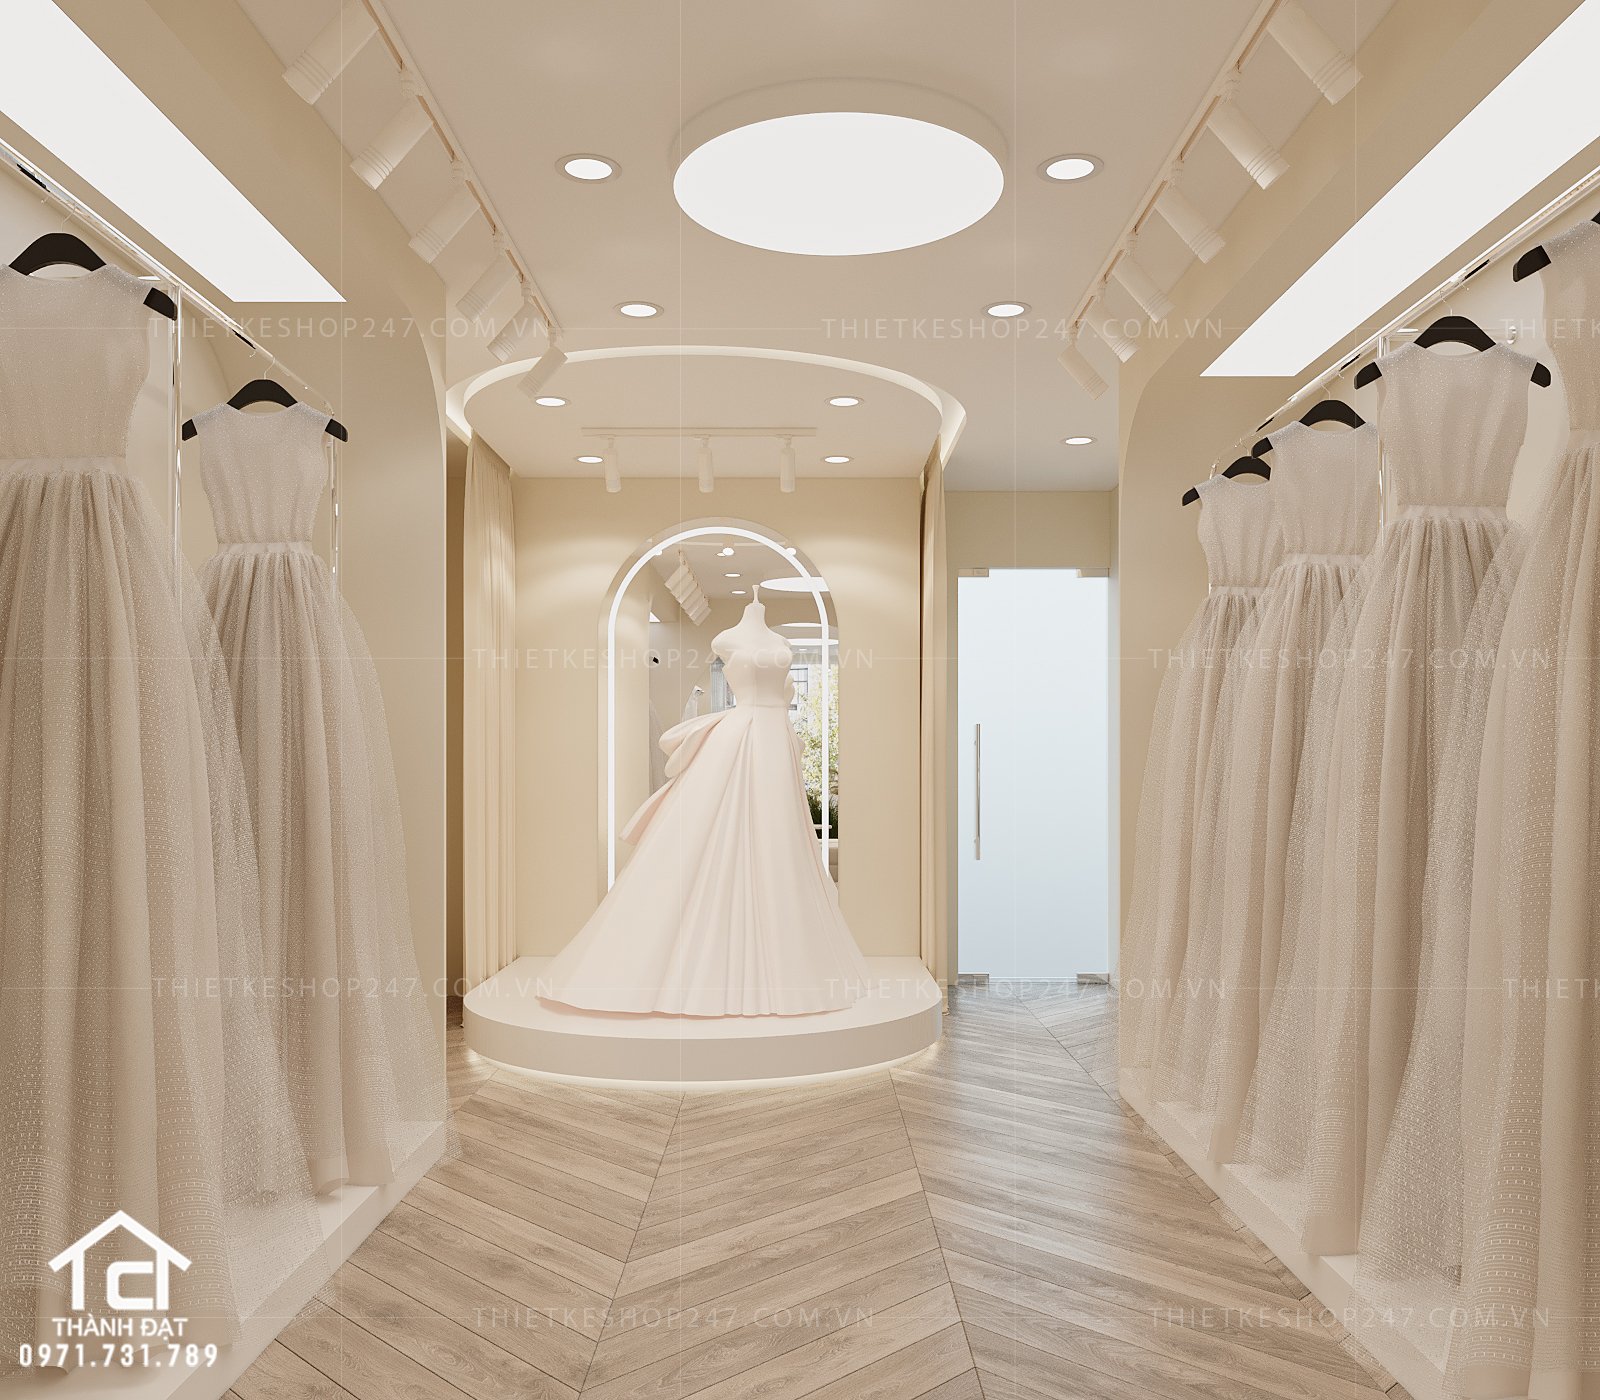 thiết kế studio áo cưới đẹp sang chảnh.jpg